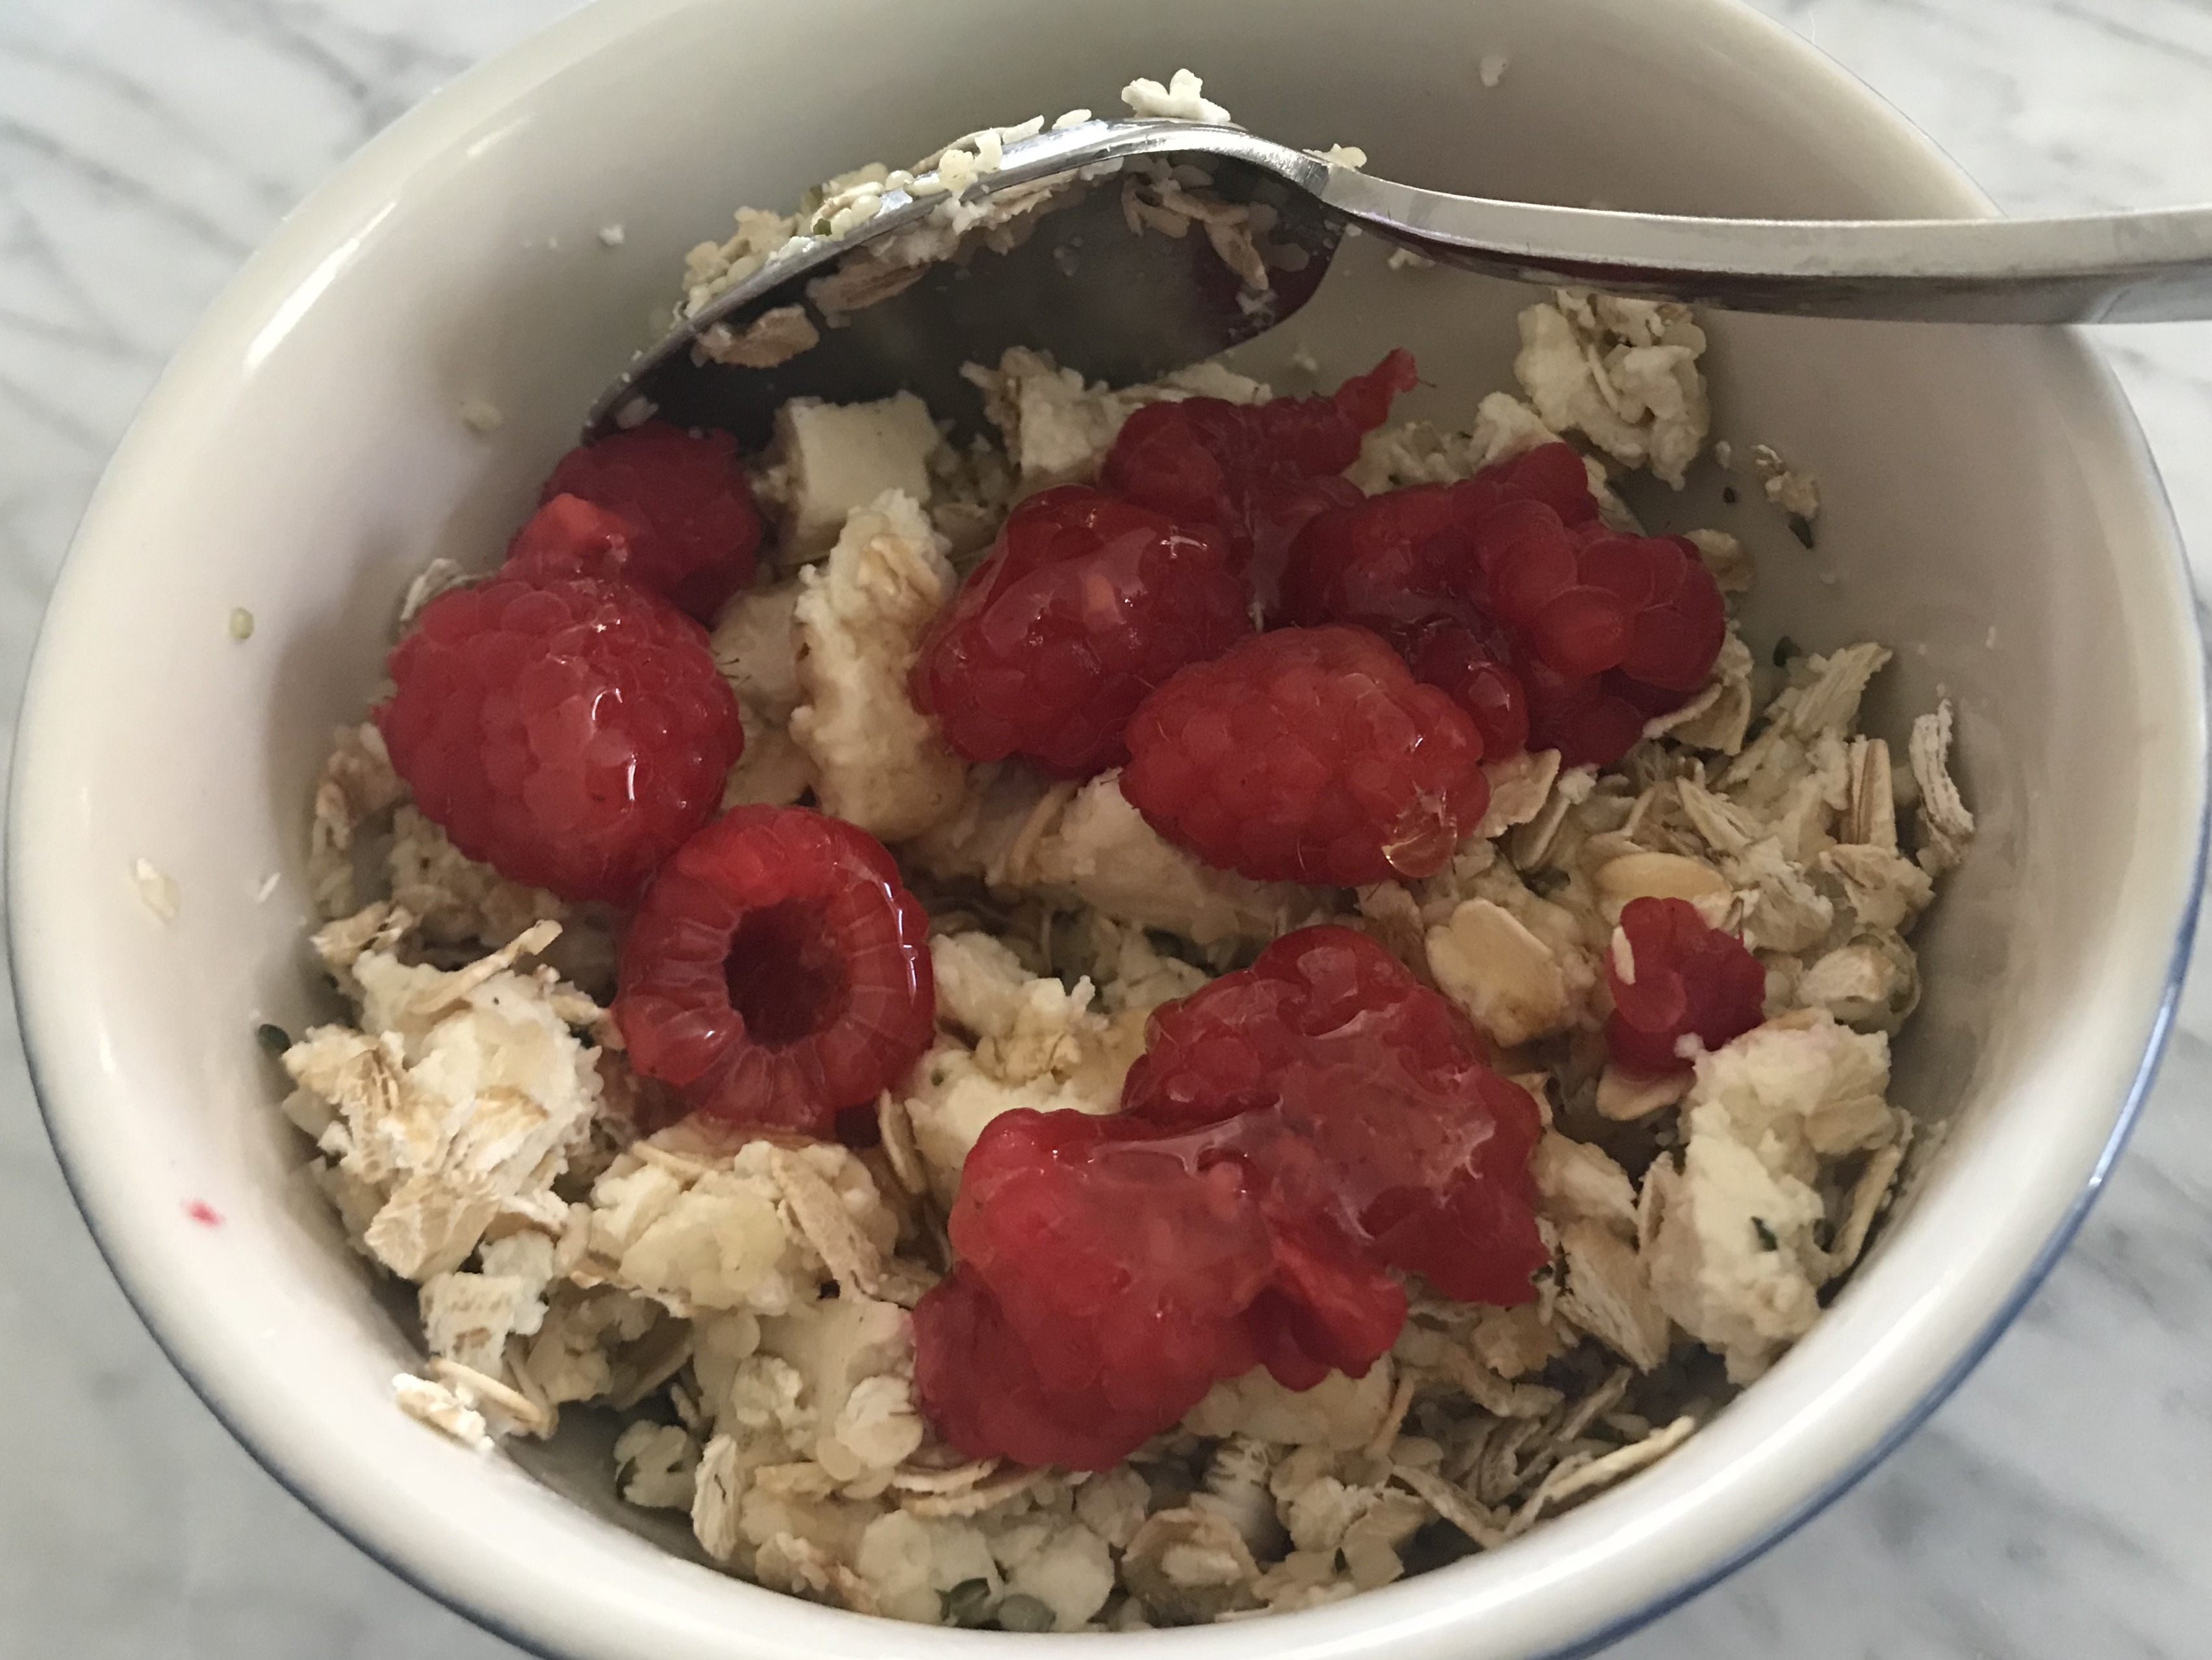 Yummy Breakfast Bowl by Accidental Chef, Elysabeth Alfano